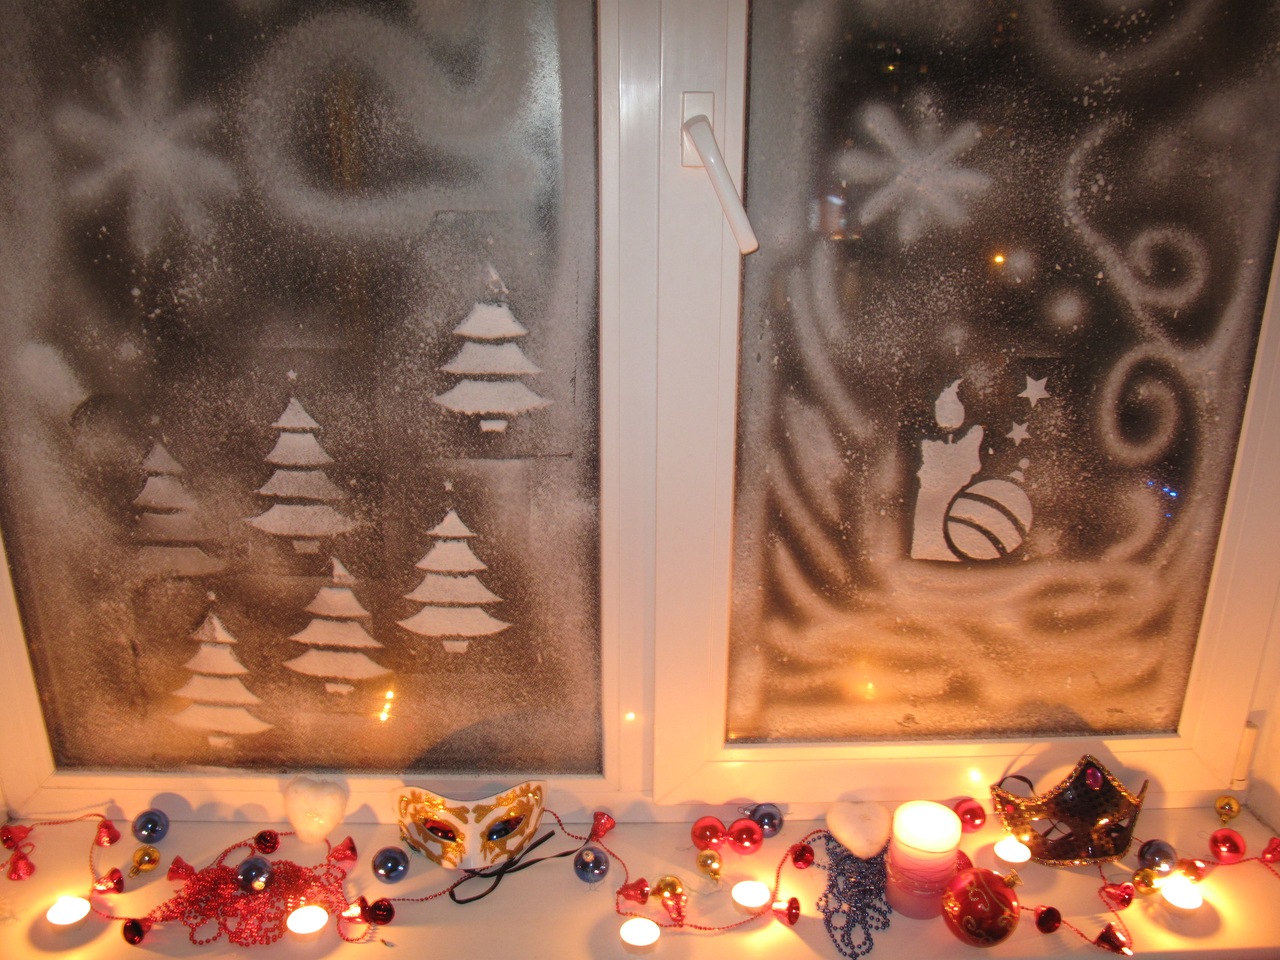 Украшаем окна к Новому году: лучшие идеи для праздничного декора